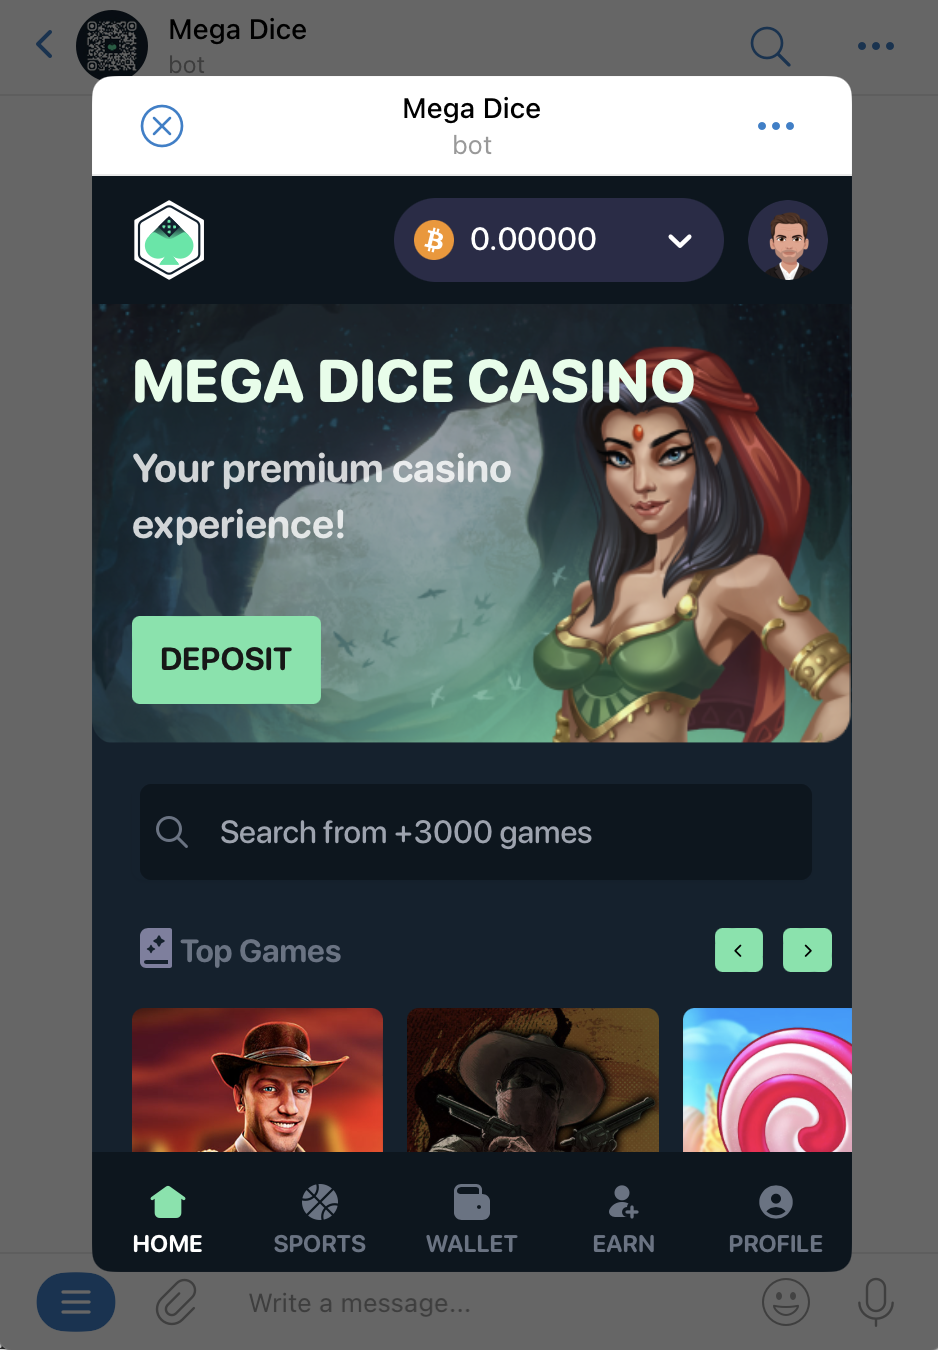 Mega Dice casino on Telegram 